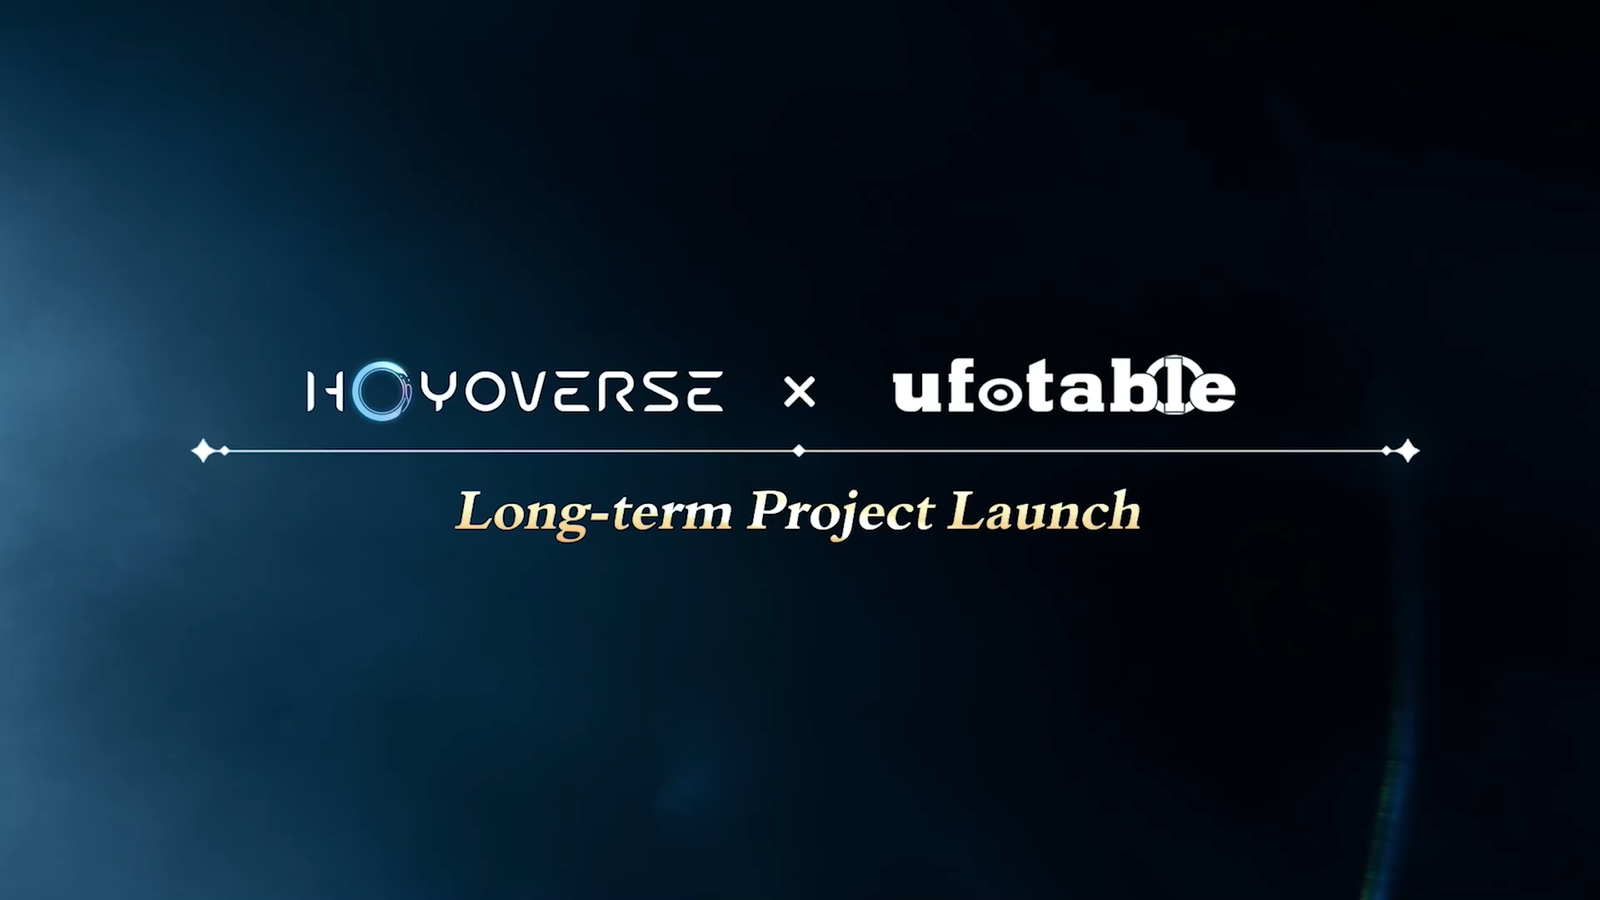 HoYoverse jalin kerja sama dengan Ufotable